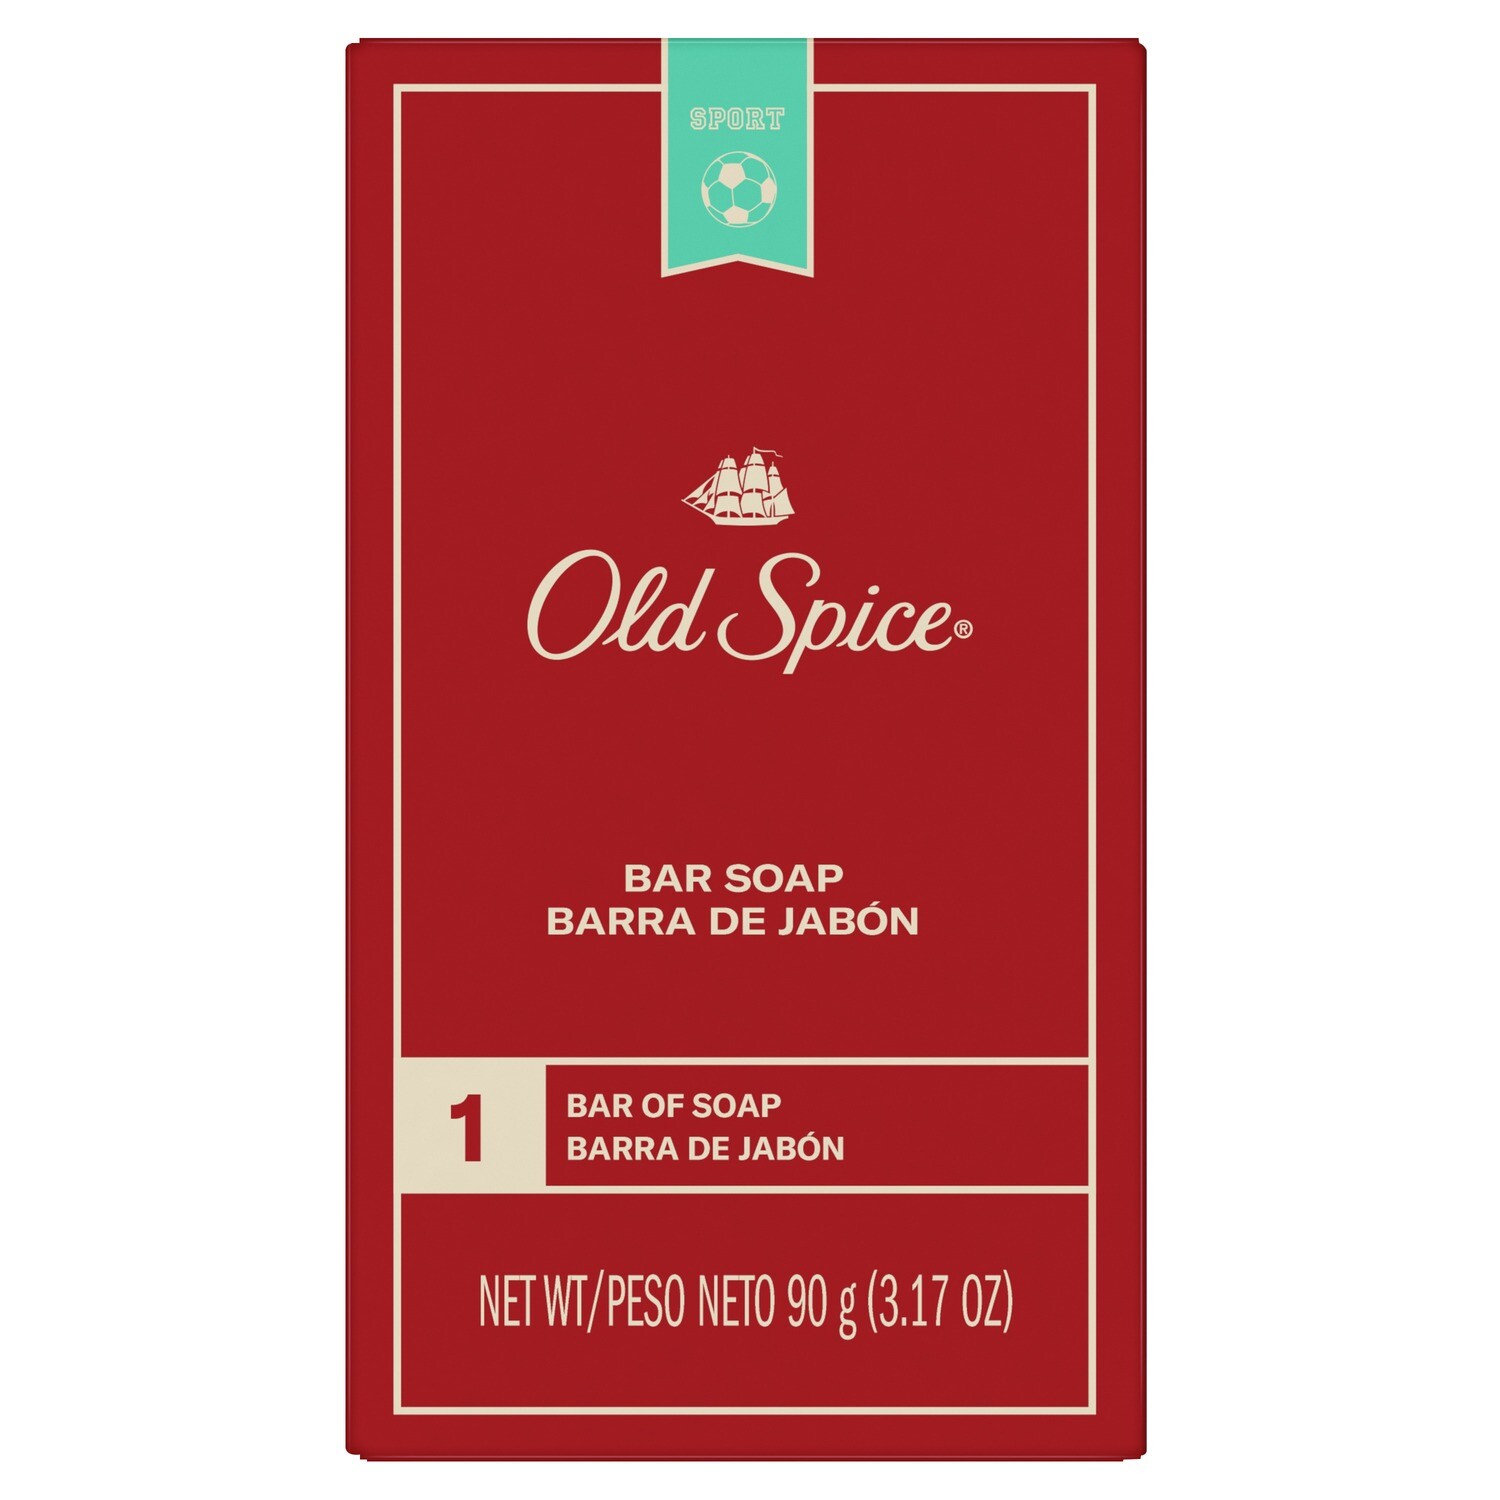 Old Spice 3.17oz